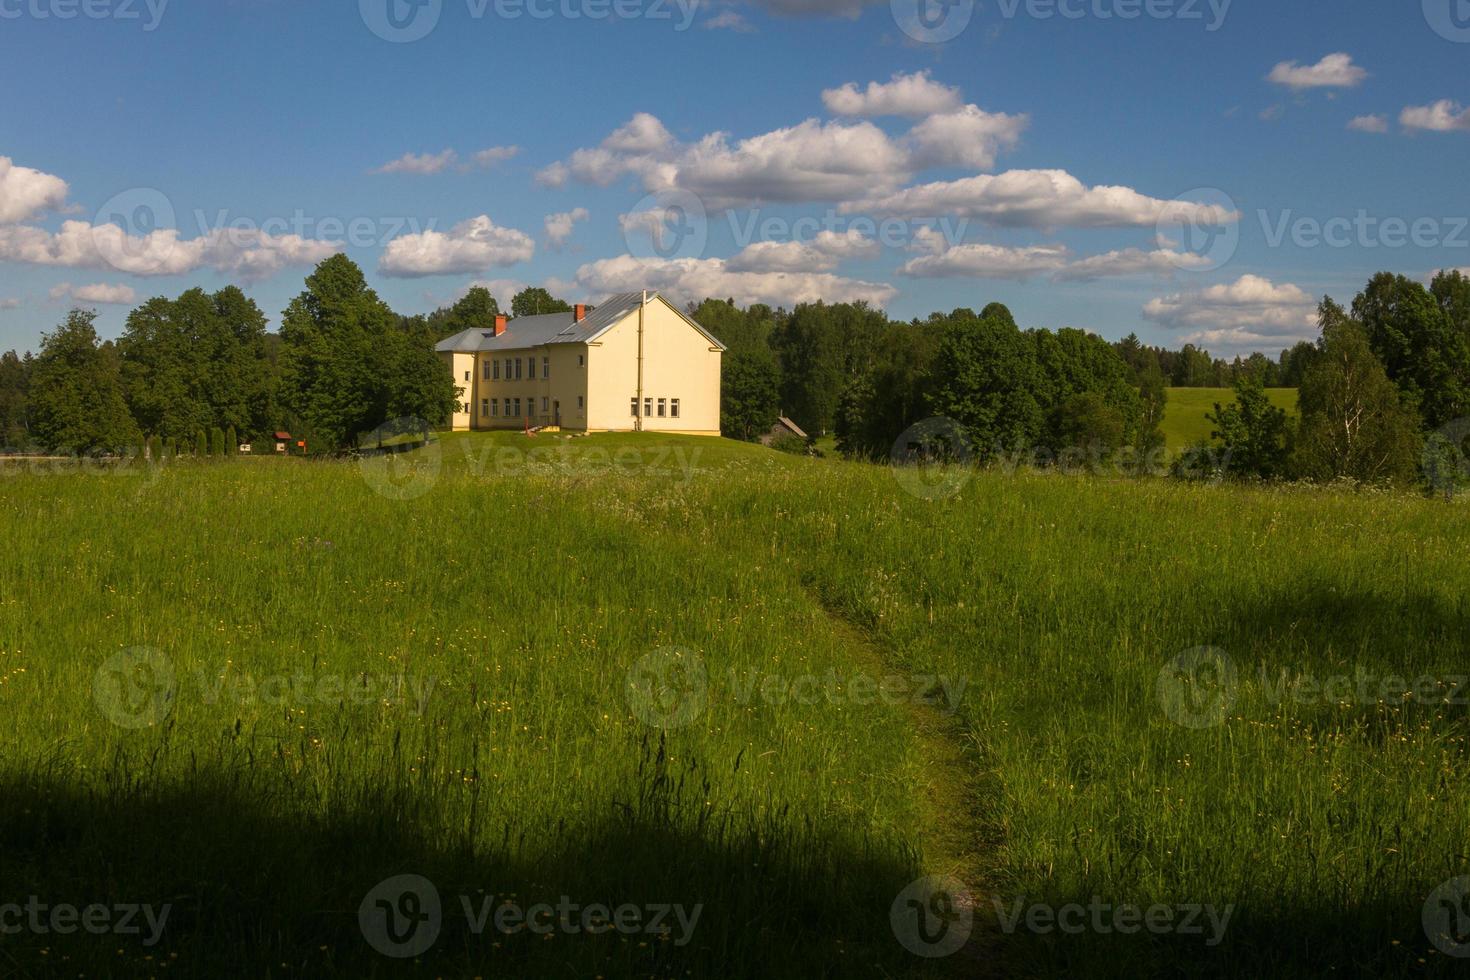 paysages de la campagne lettone au printemps photo